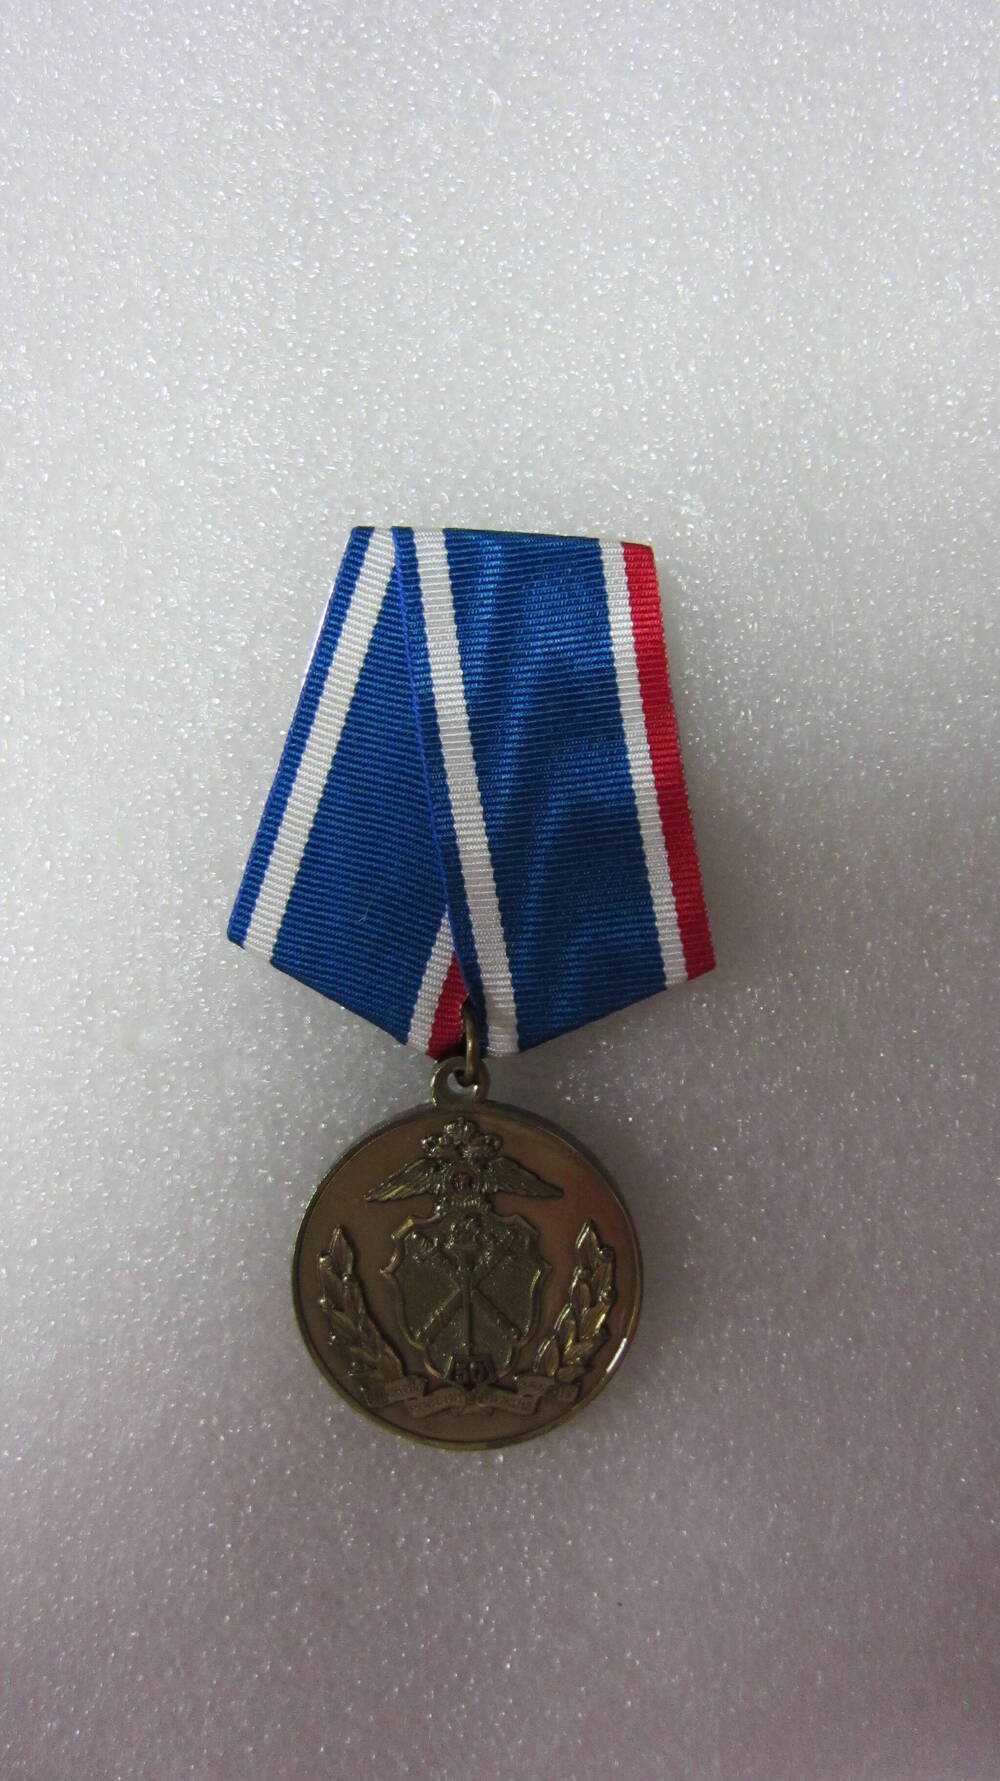 Медаль «Следственные подразделения МВД России. 1963-2013» Смирнова Г.А.